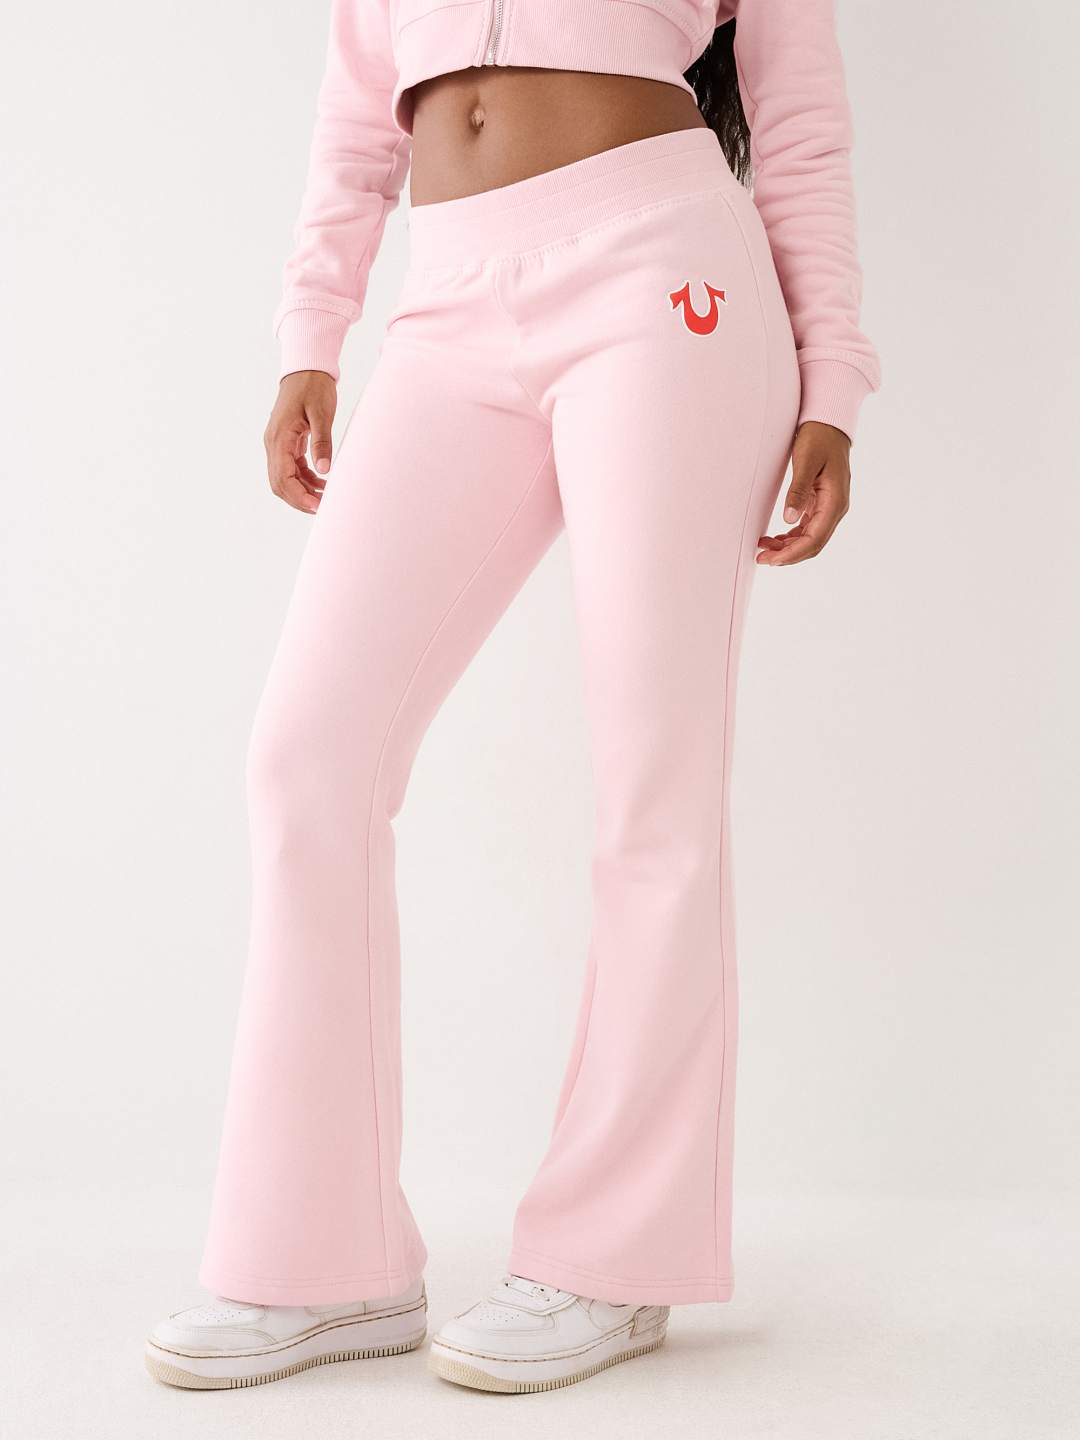 True Religion jersey sweatpants in pink